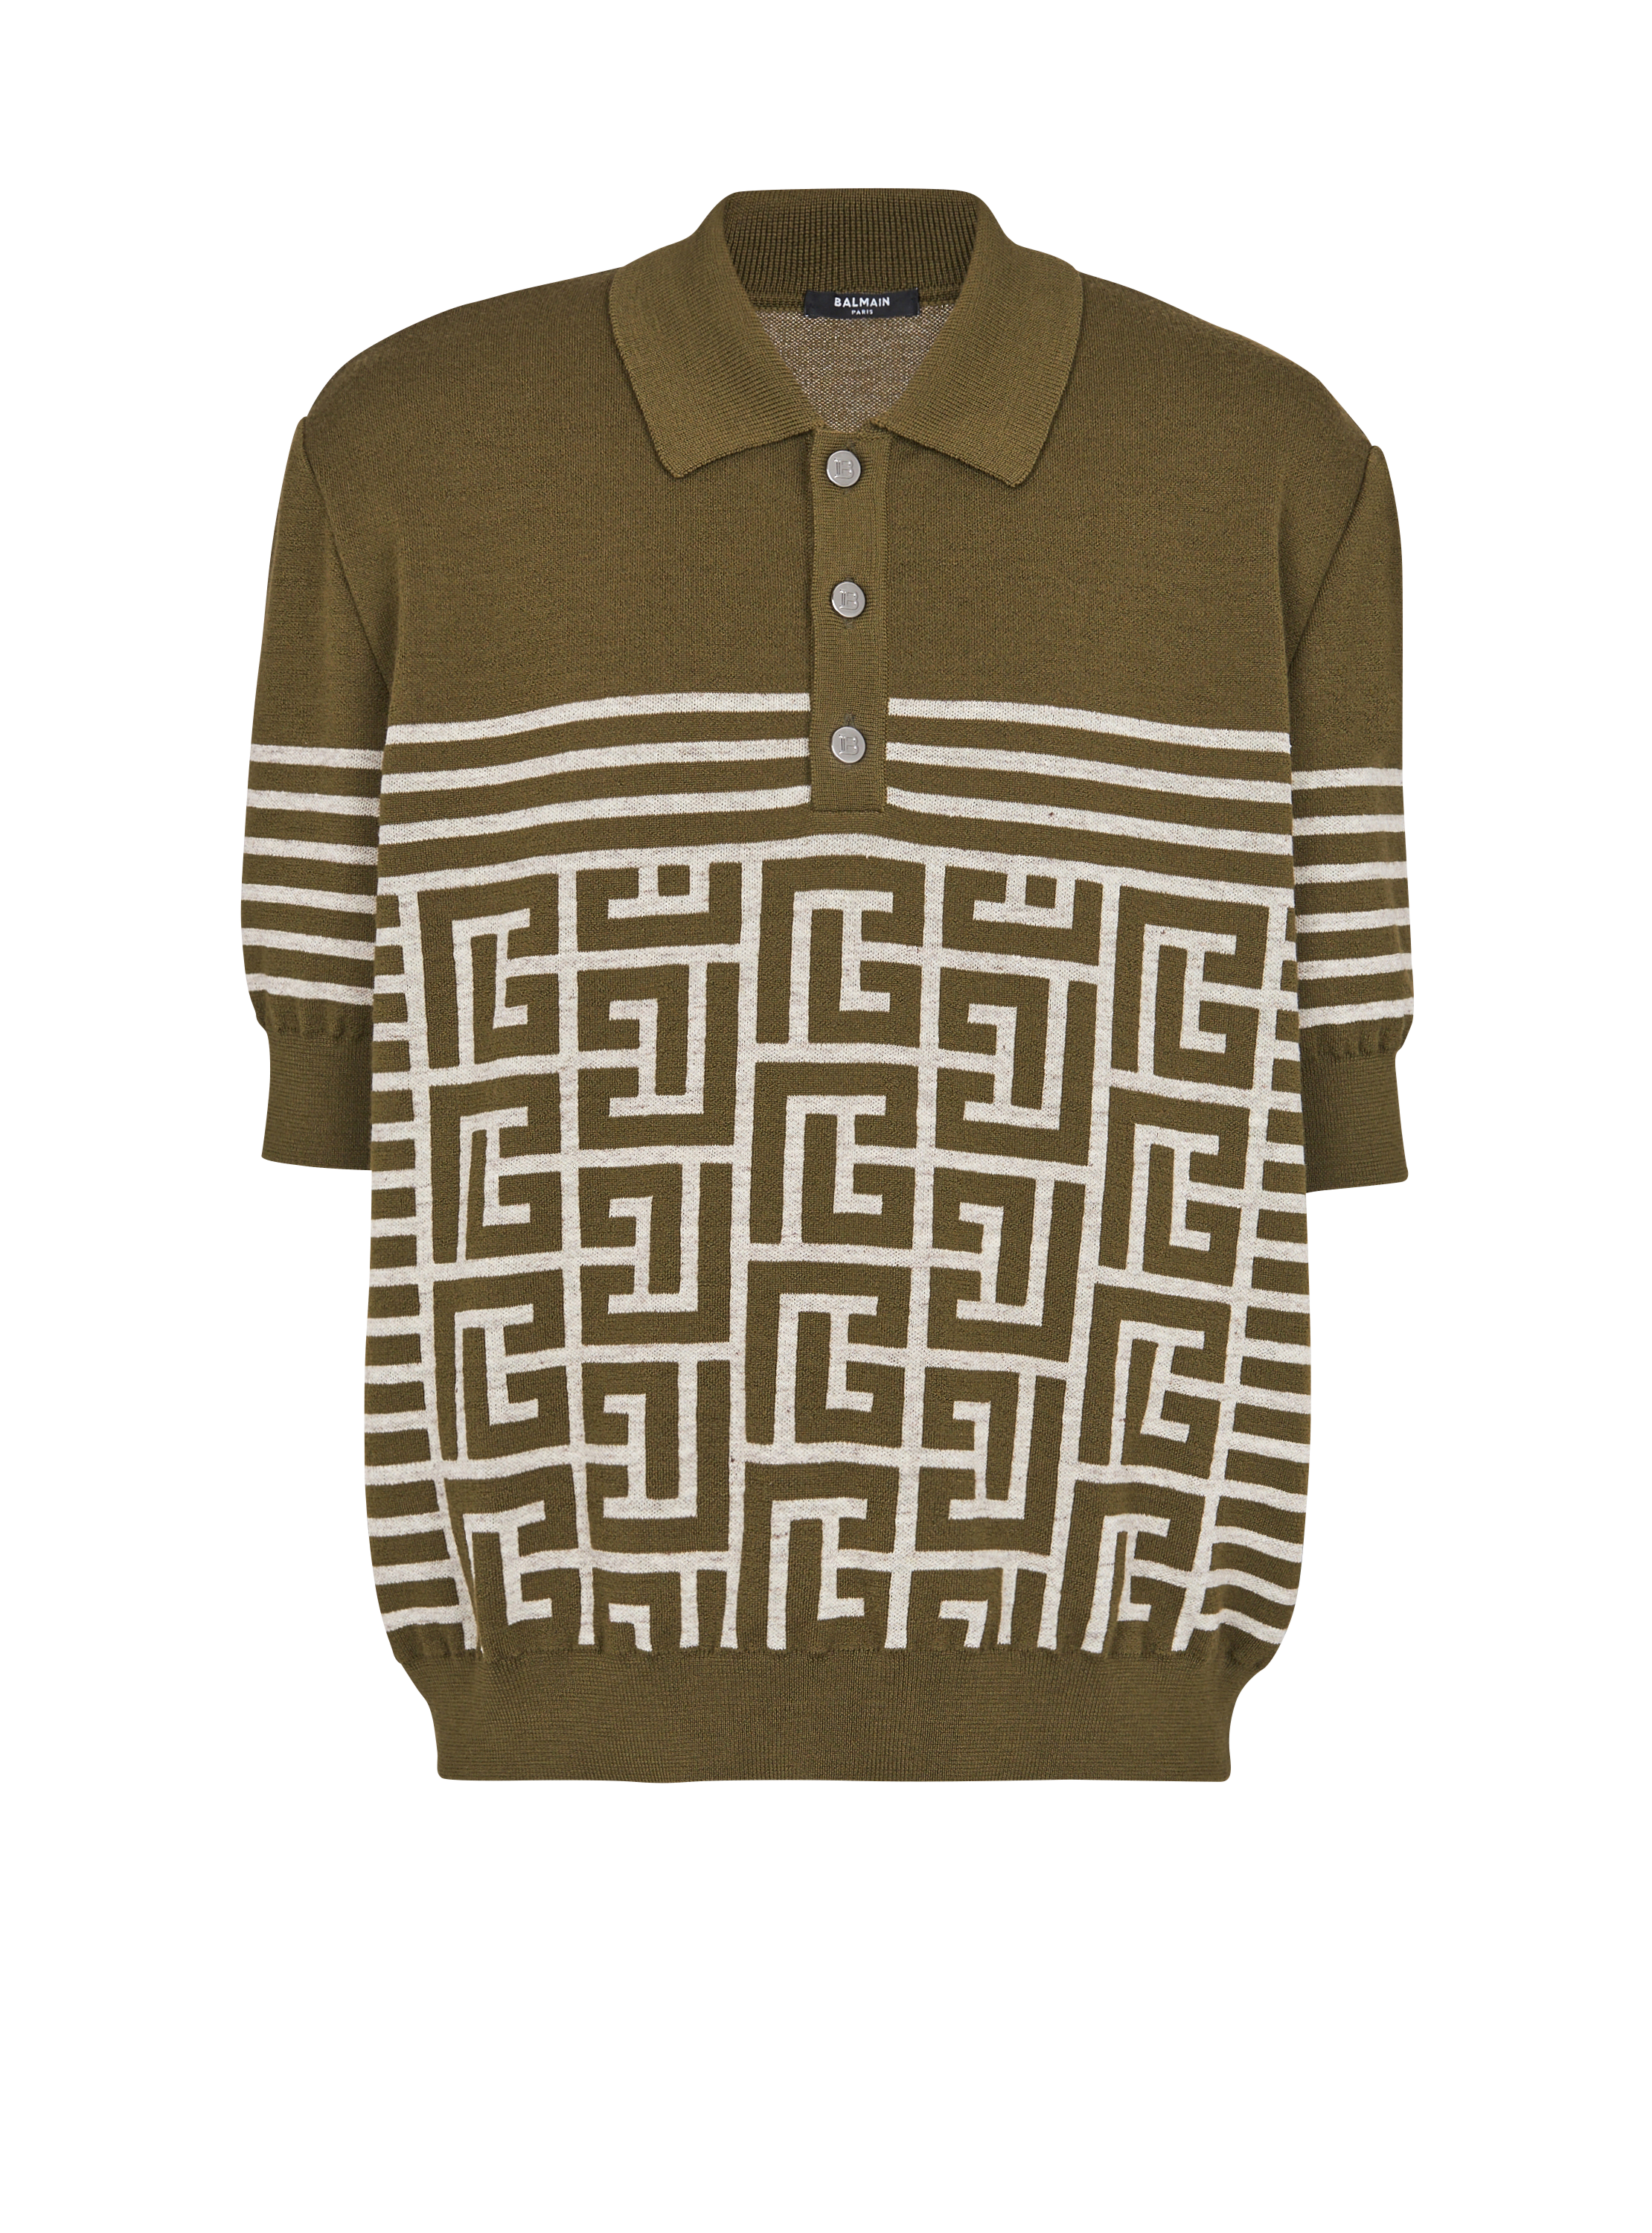 Poloshirt aus Wolle mit Monogramm und Streifen, khaki, hi-res